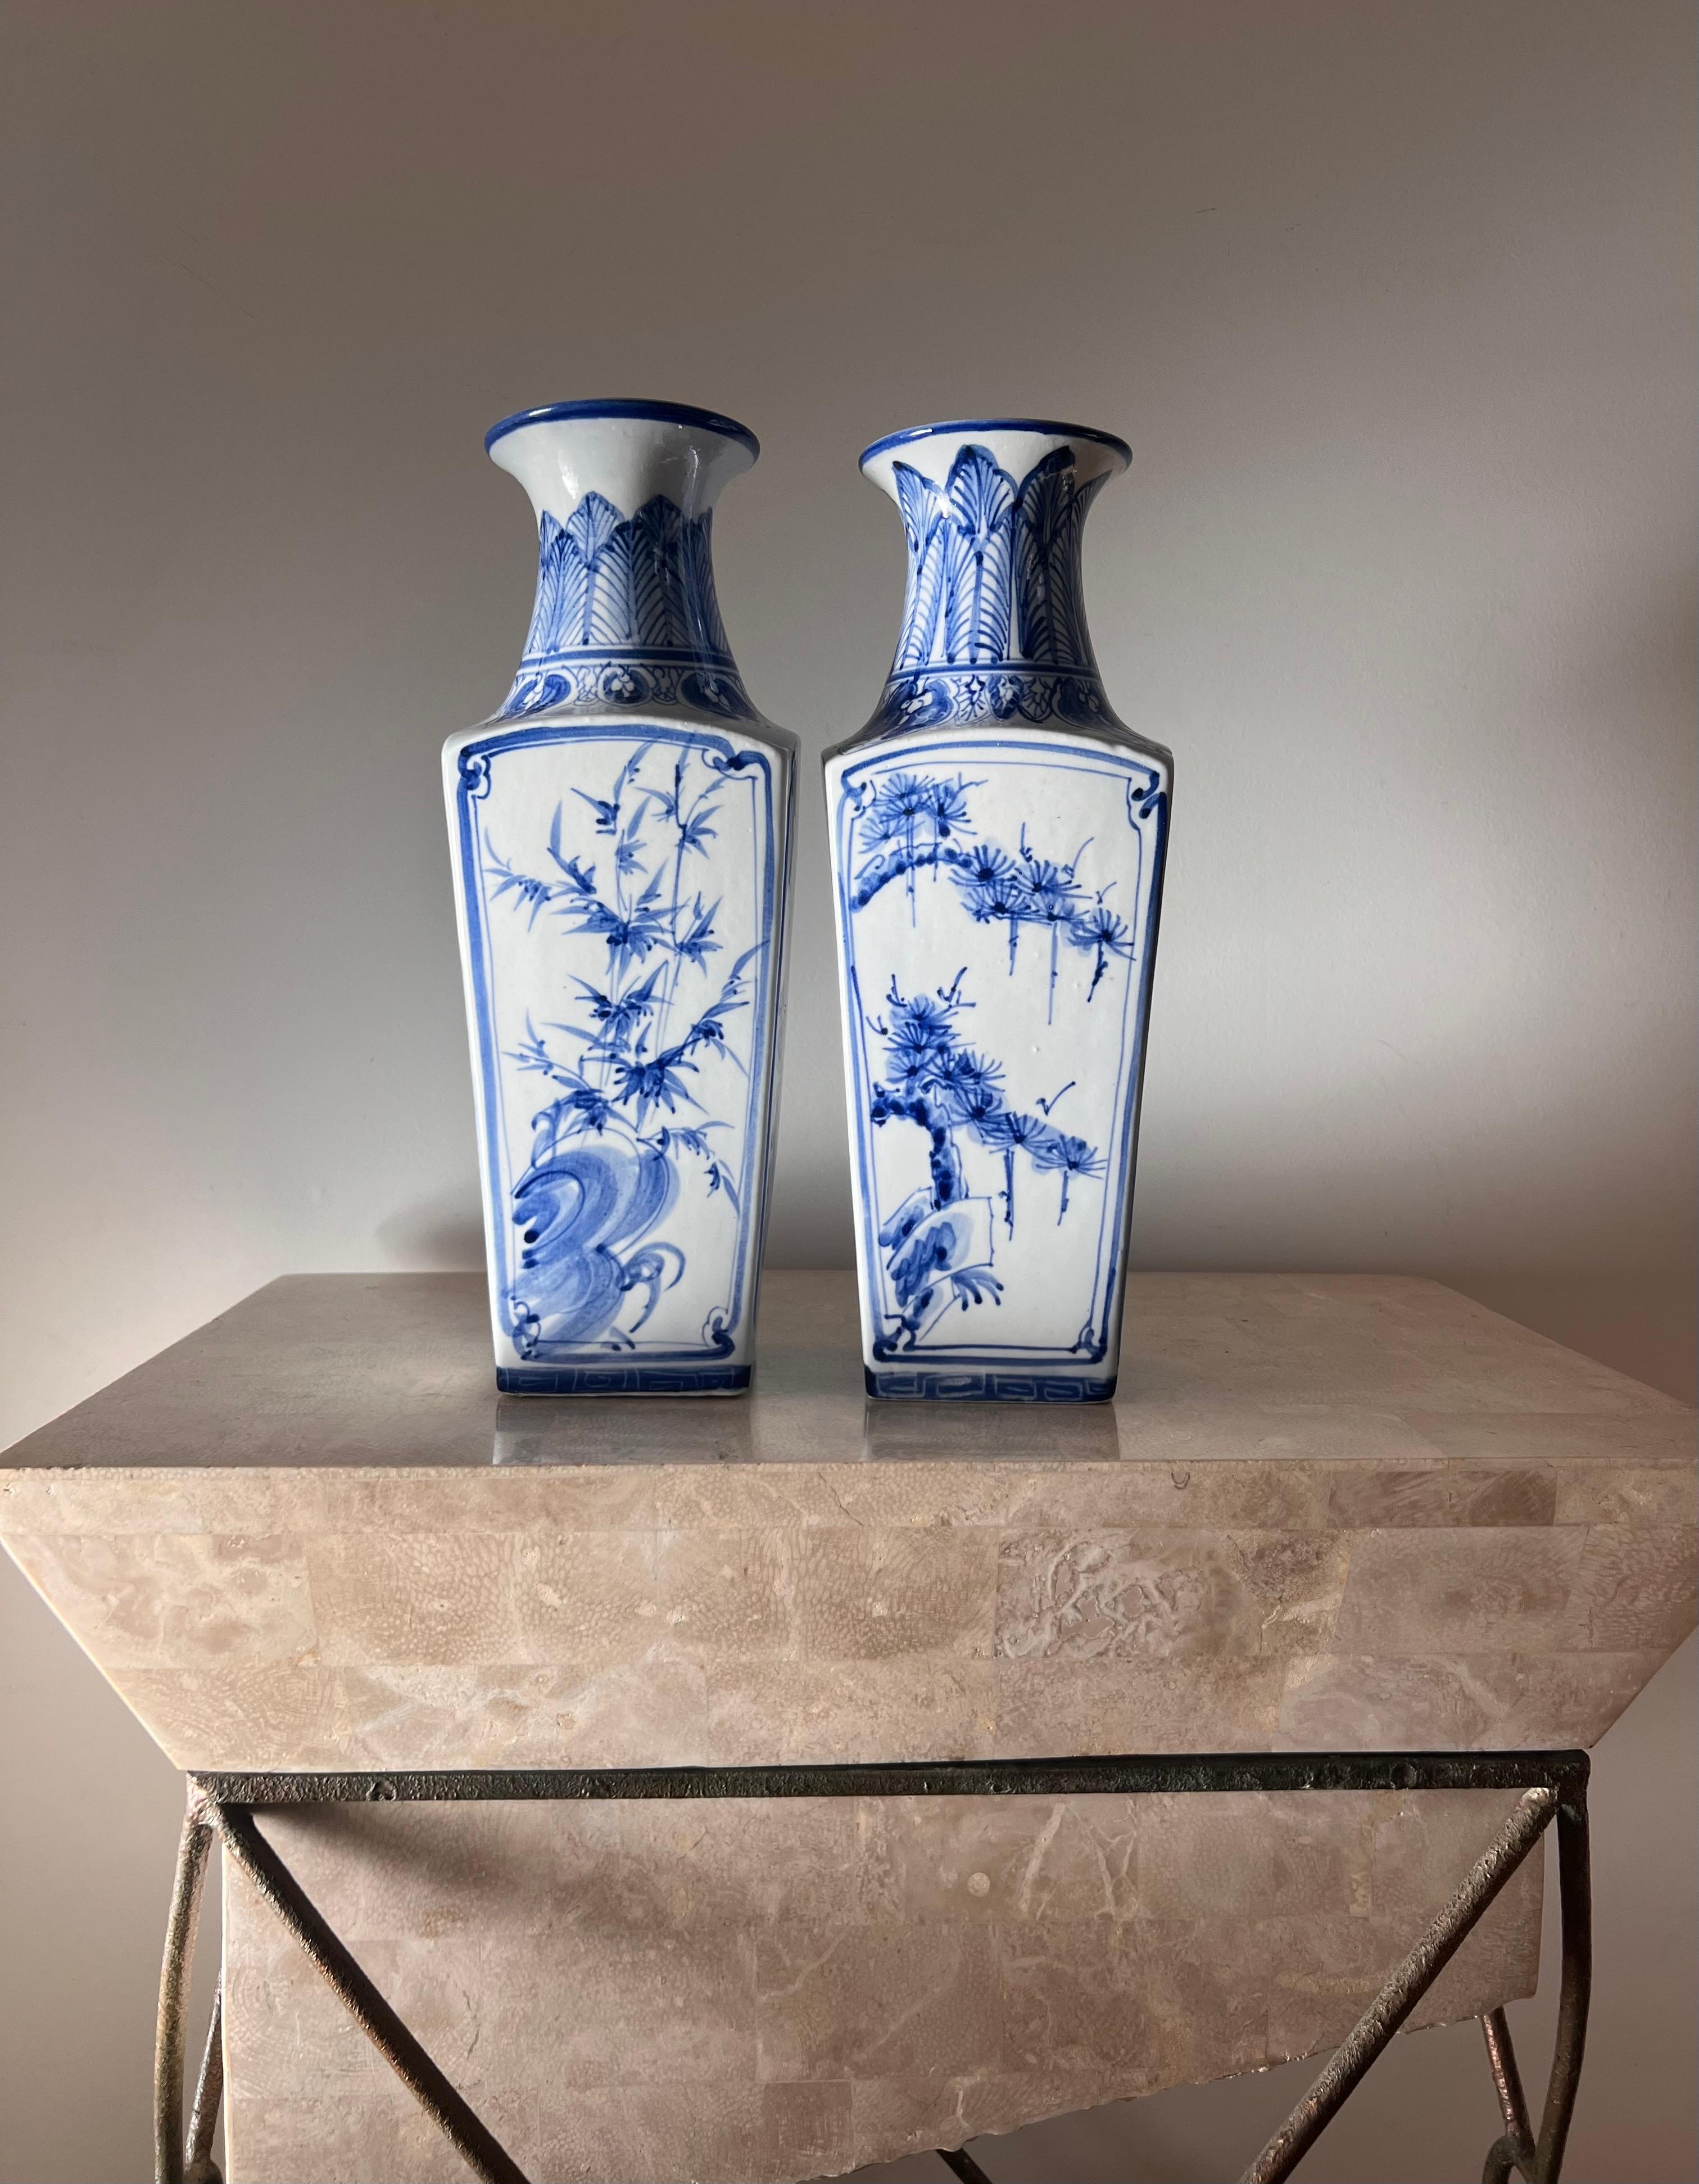 Zwei chinesische Vasen aus blauem und weißem Porzellan mit Motiven von Tannenbäumen, Kirschblüten und anderer Flora. Ich bin mir nicht sicher, aus welcher Epoche diese stammen, möglicherweise aus dem späten 19. oder frühen 20. Jahrhundert, aber es